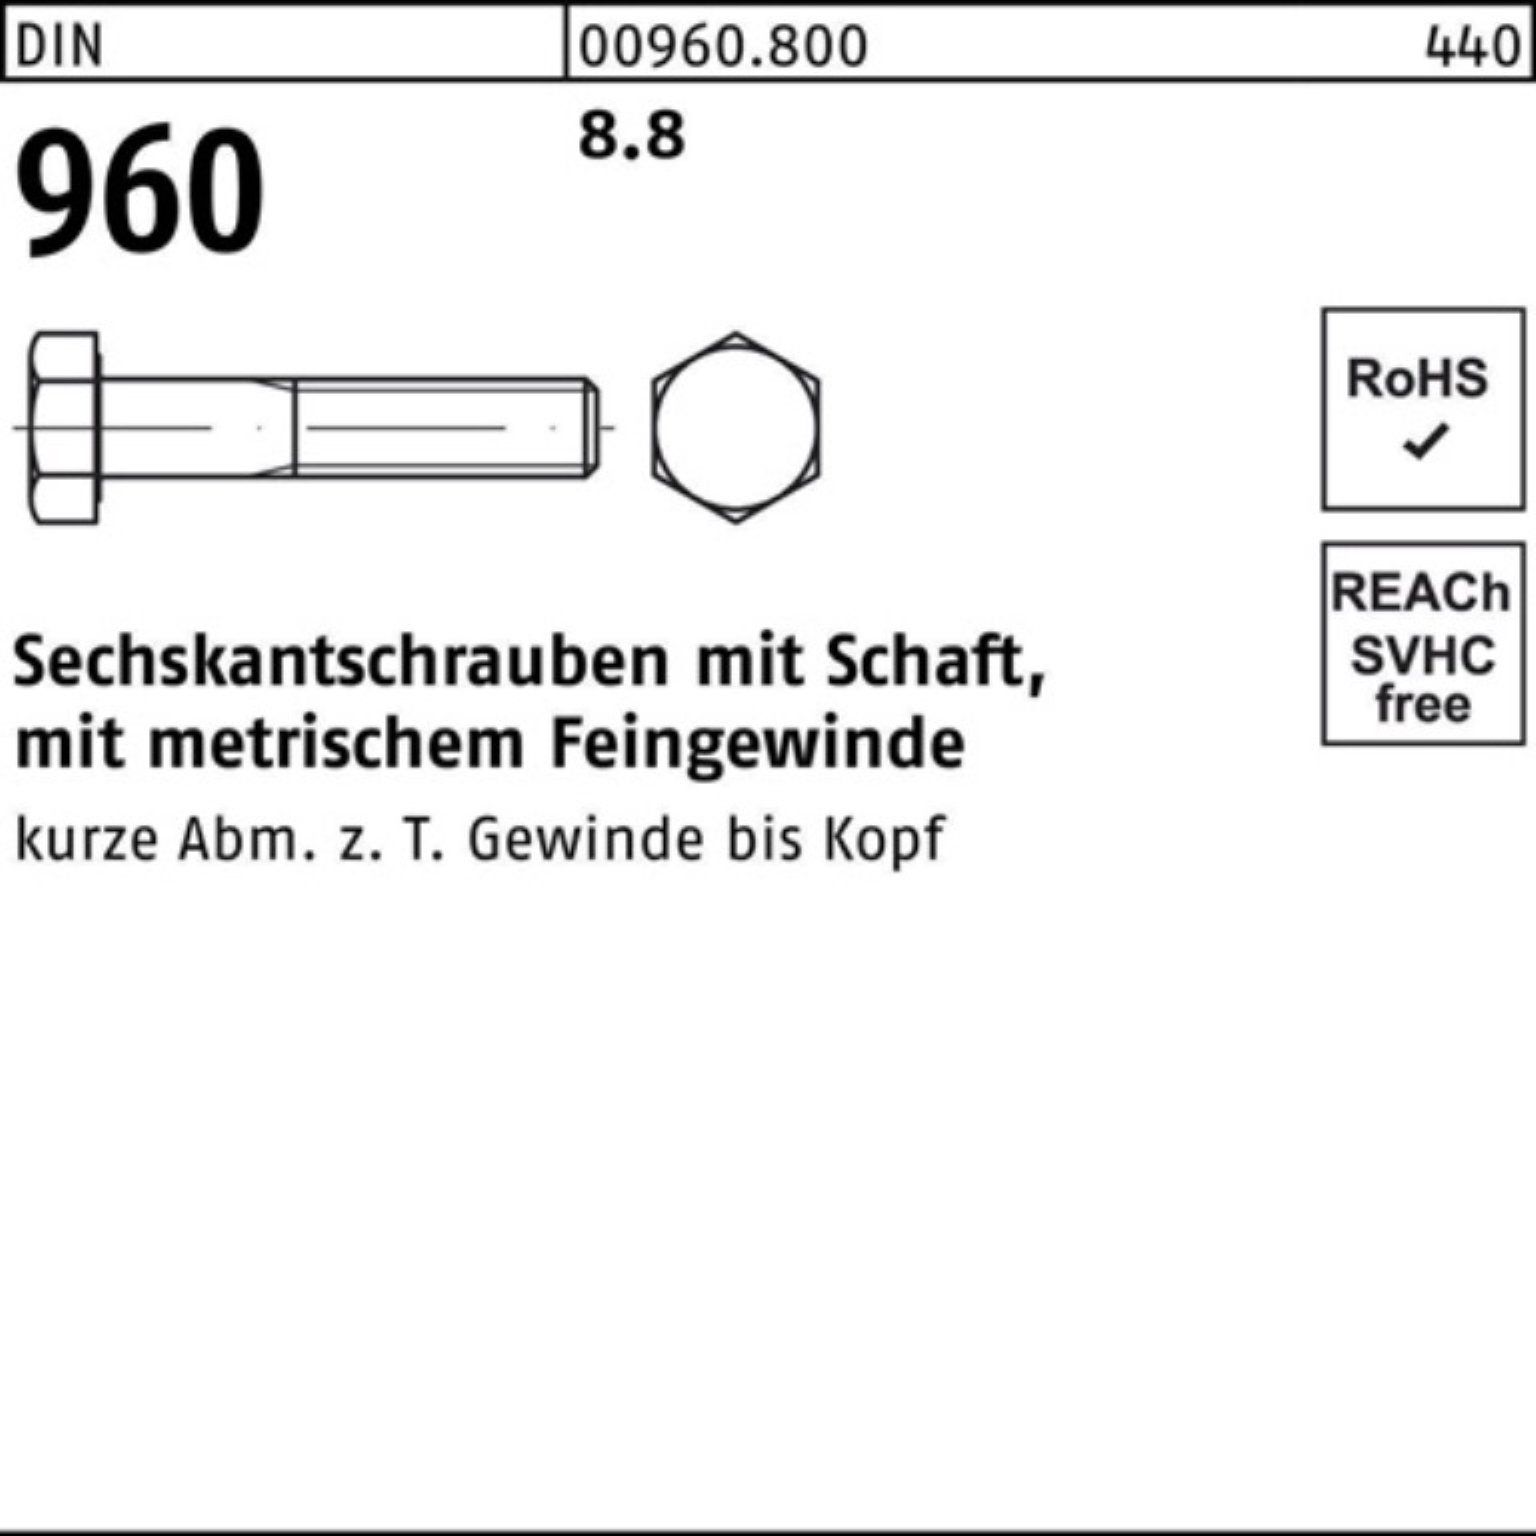 Reyher Sechskantschraube Sechskantschraube M14x1,5x 100er 8.8 Stück 960 50 DIN Pack Schaft 80